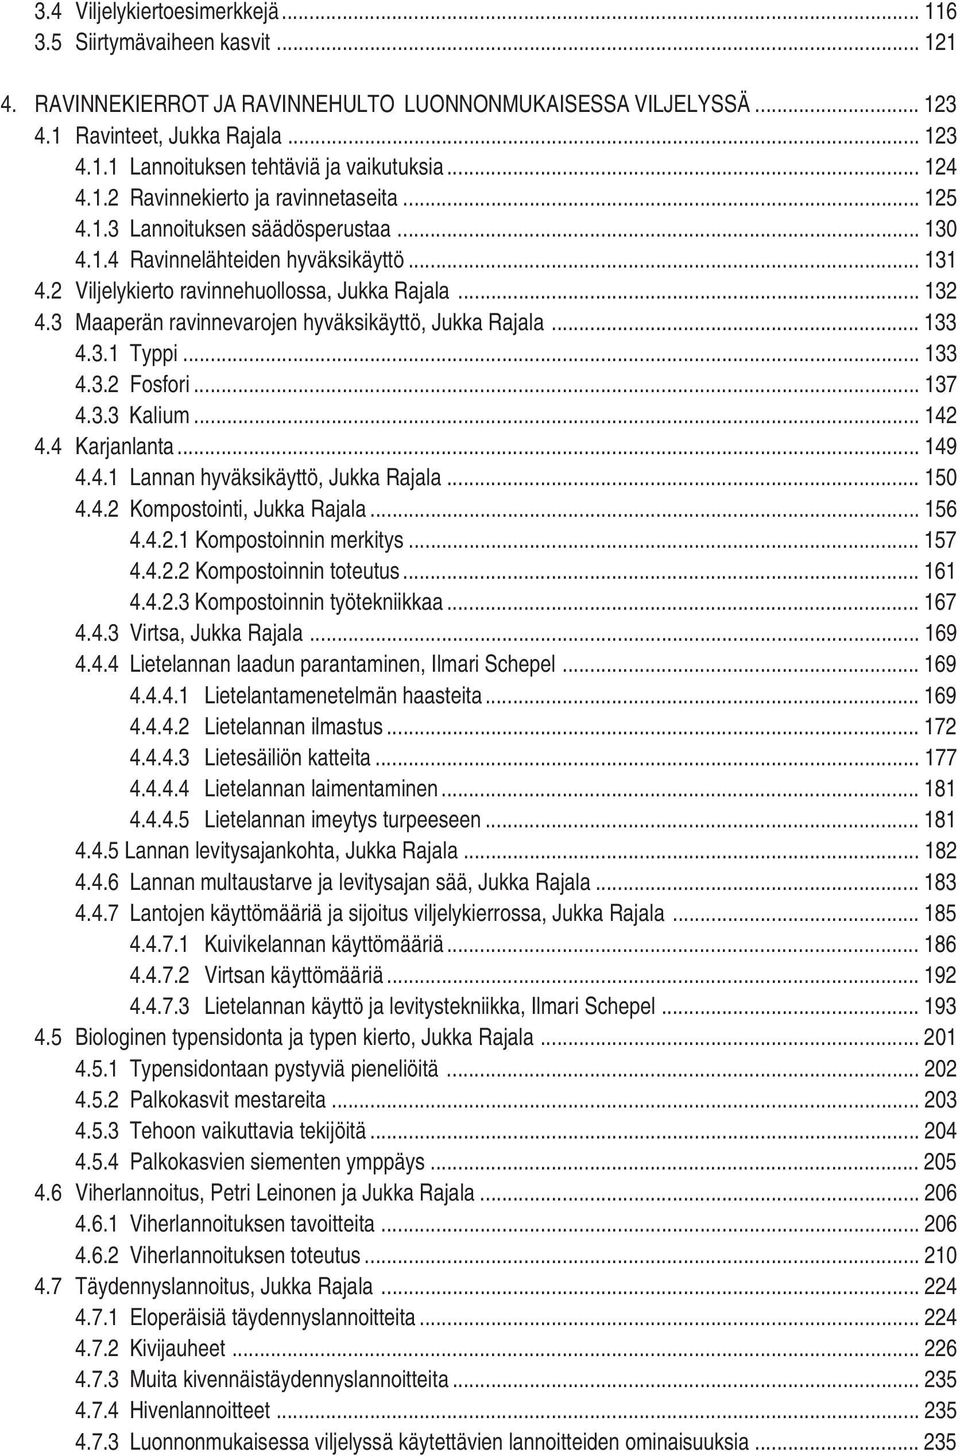 3 Maaperän ravinnevarojen hyväksikäyttö, Jukka Rajala... 133 4.3.1 Typpi... 133 4.3.2 Fosfori... 137 4.3.3 Kalium... 142 4.4 Karjanlanta... 149 4.4.1 Lannan hyväksikäyttö, Jukka Rajala... 150 4.4.2 Kompostointi, Jukka Rajala.